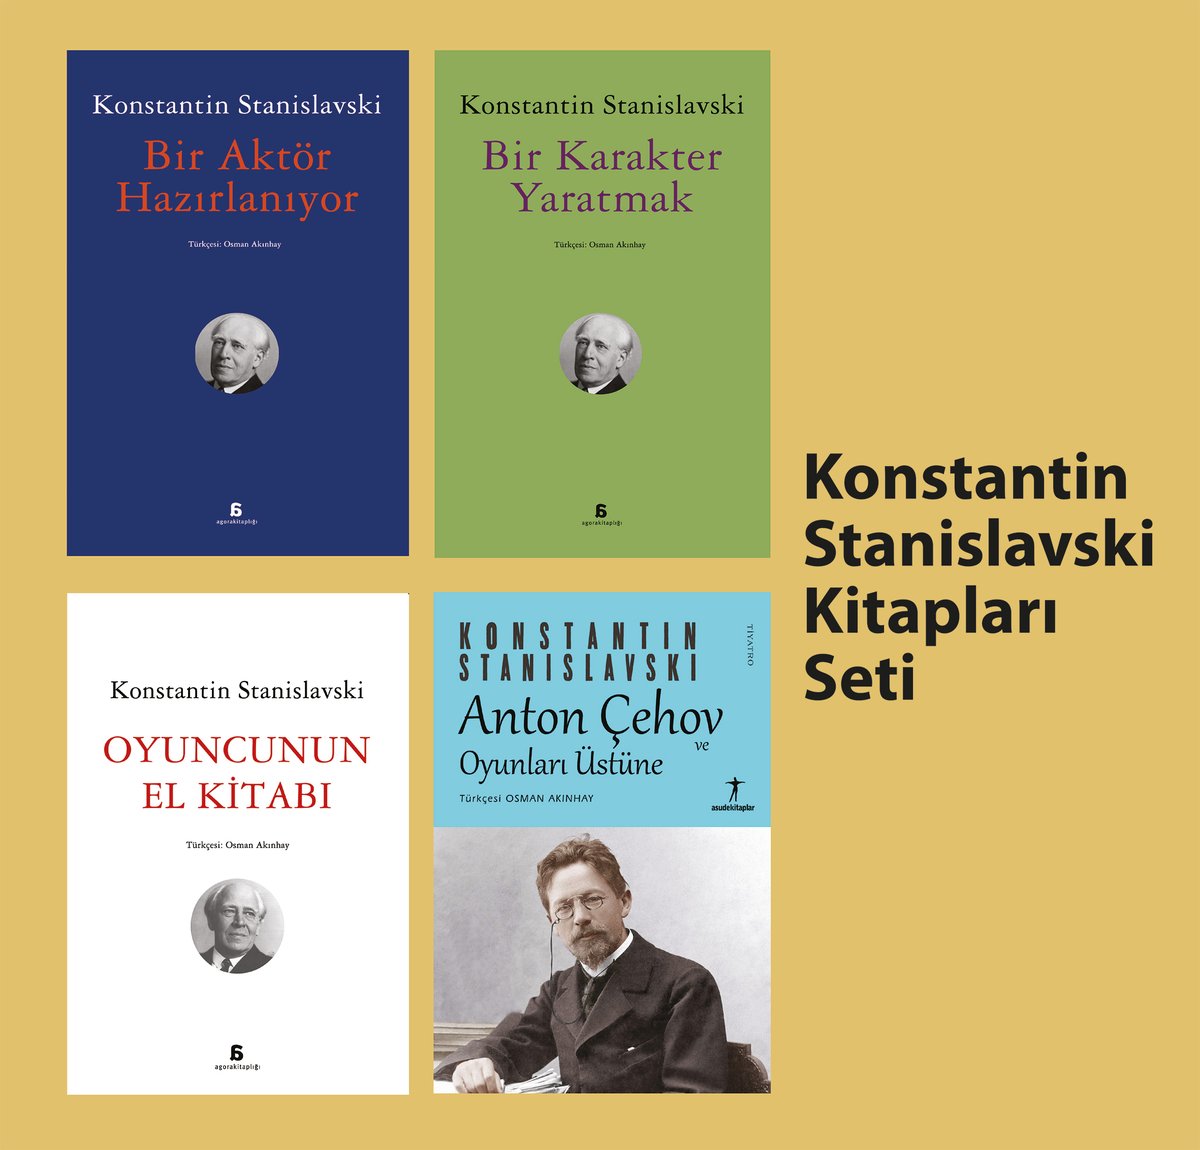 Agora'da Konstantin Stanislavski kitapları seti % 50 indirimle agorakitapligi.com sitesinde: agorakitapligi.com/konstantin-sta…